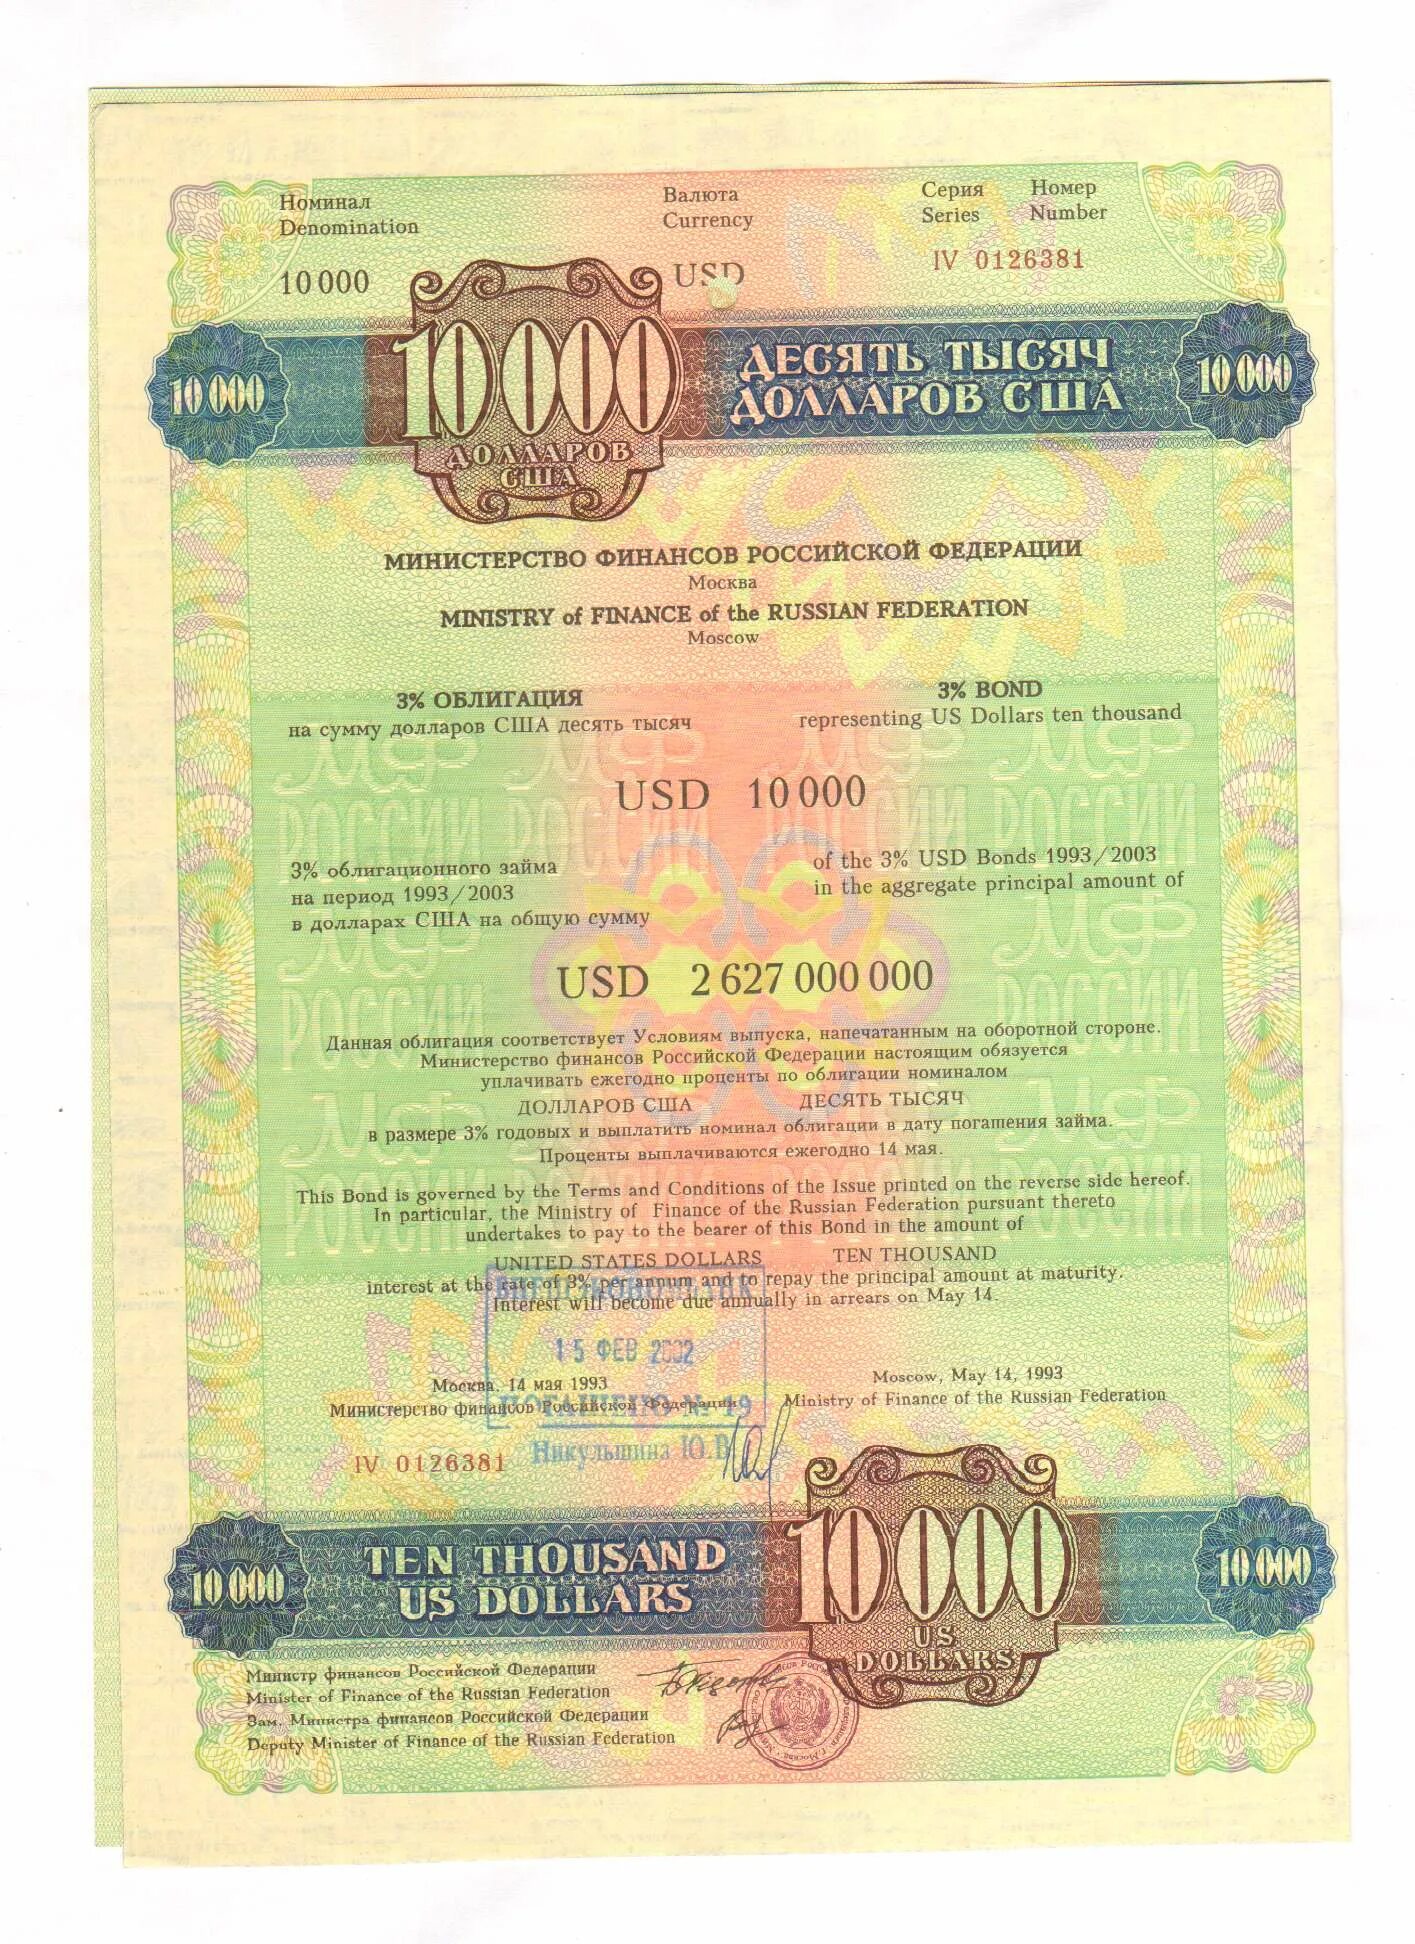 Долларовые облигации. Облигация 10000. Облигации внутреннего государственного валютного займа. Ценные бумаги 1993. Министерство ценных бумаг